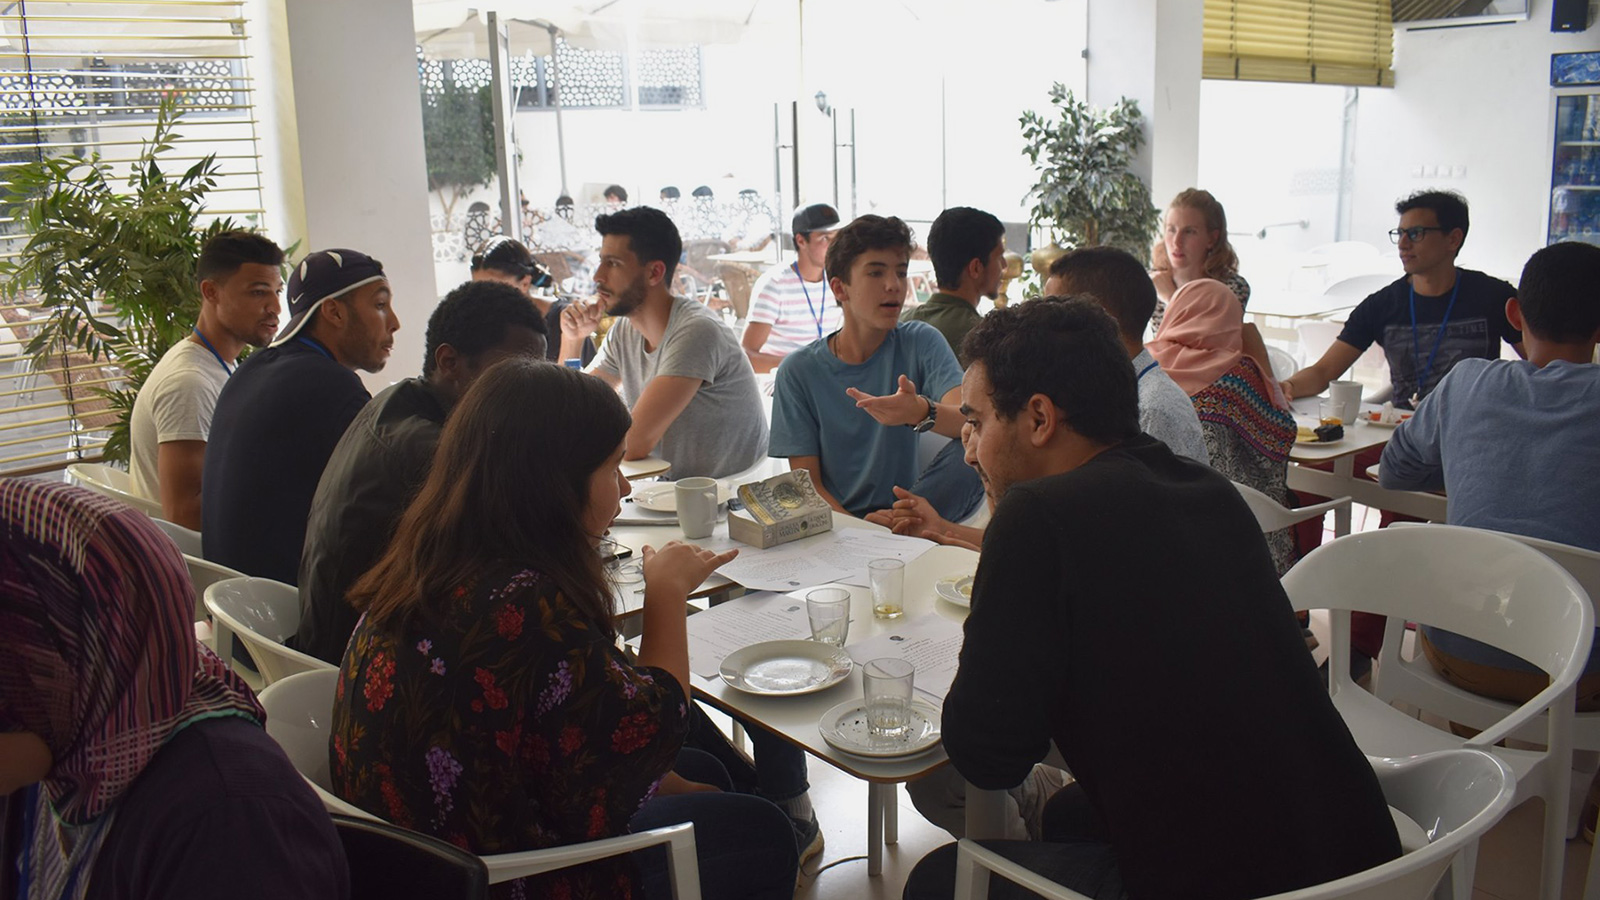 ‪يتوزع المشاركون في المقهى في مجموعات صغيرة ويتحدثون بالعربية في موضوع محدد سلفا‬ (الجزيرة)